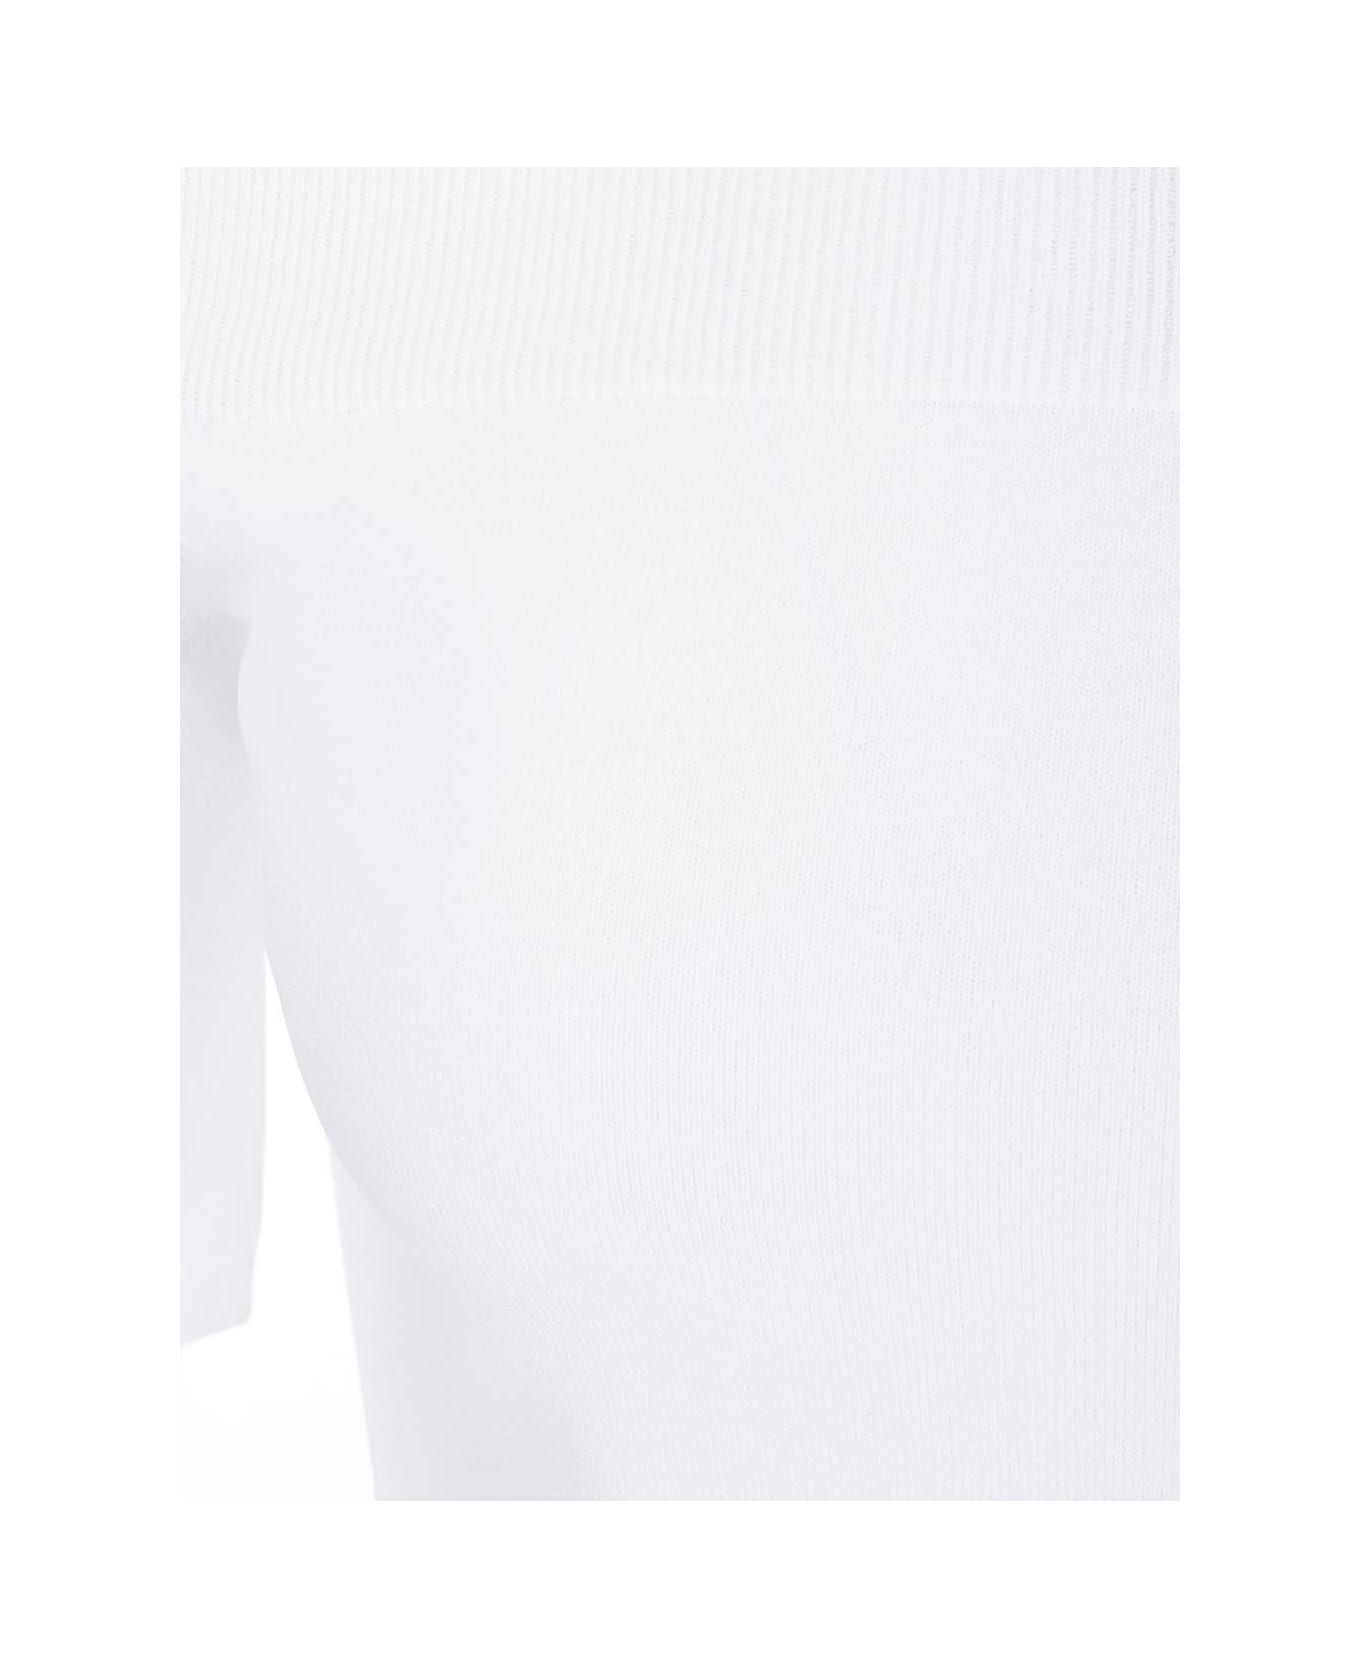 Alexander McQueen Off-the-shoulders Top - Optic white Tシャツ